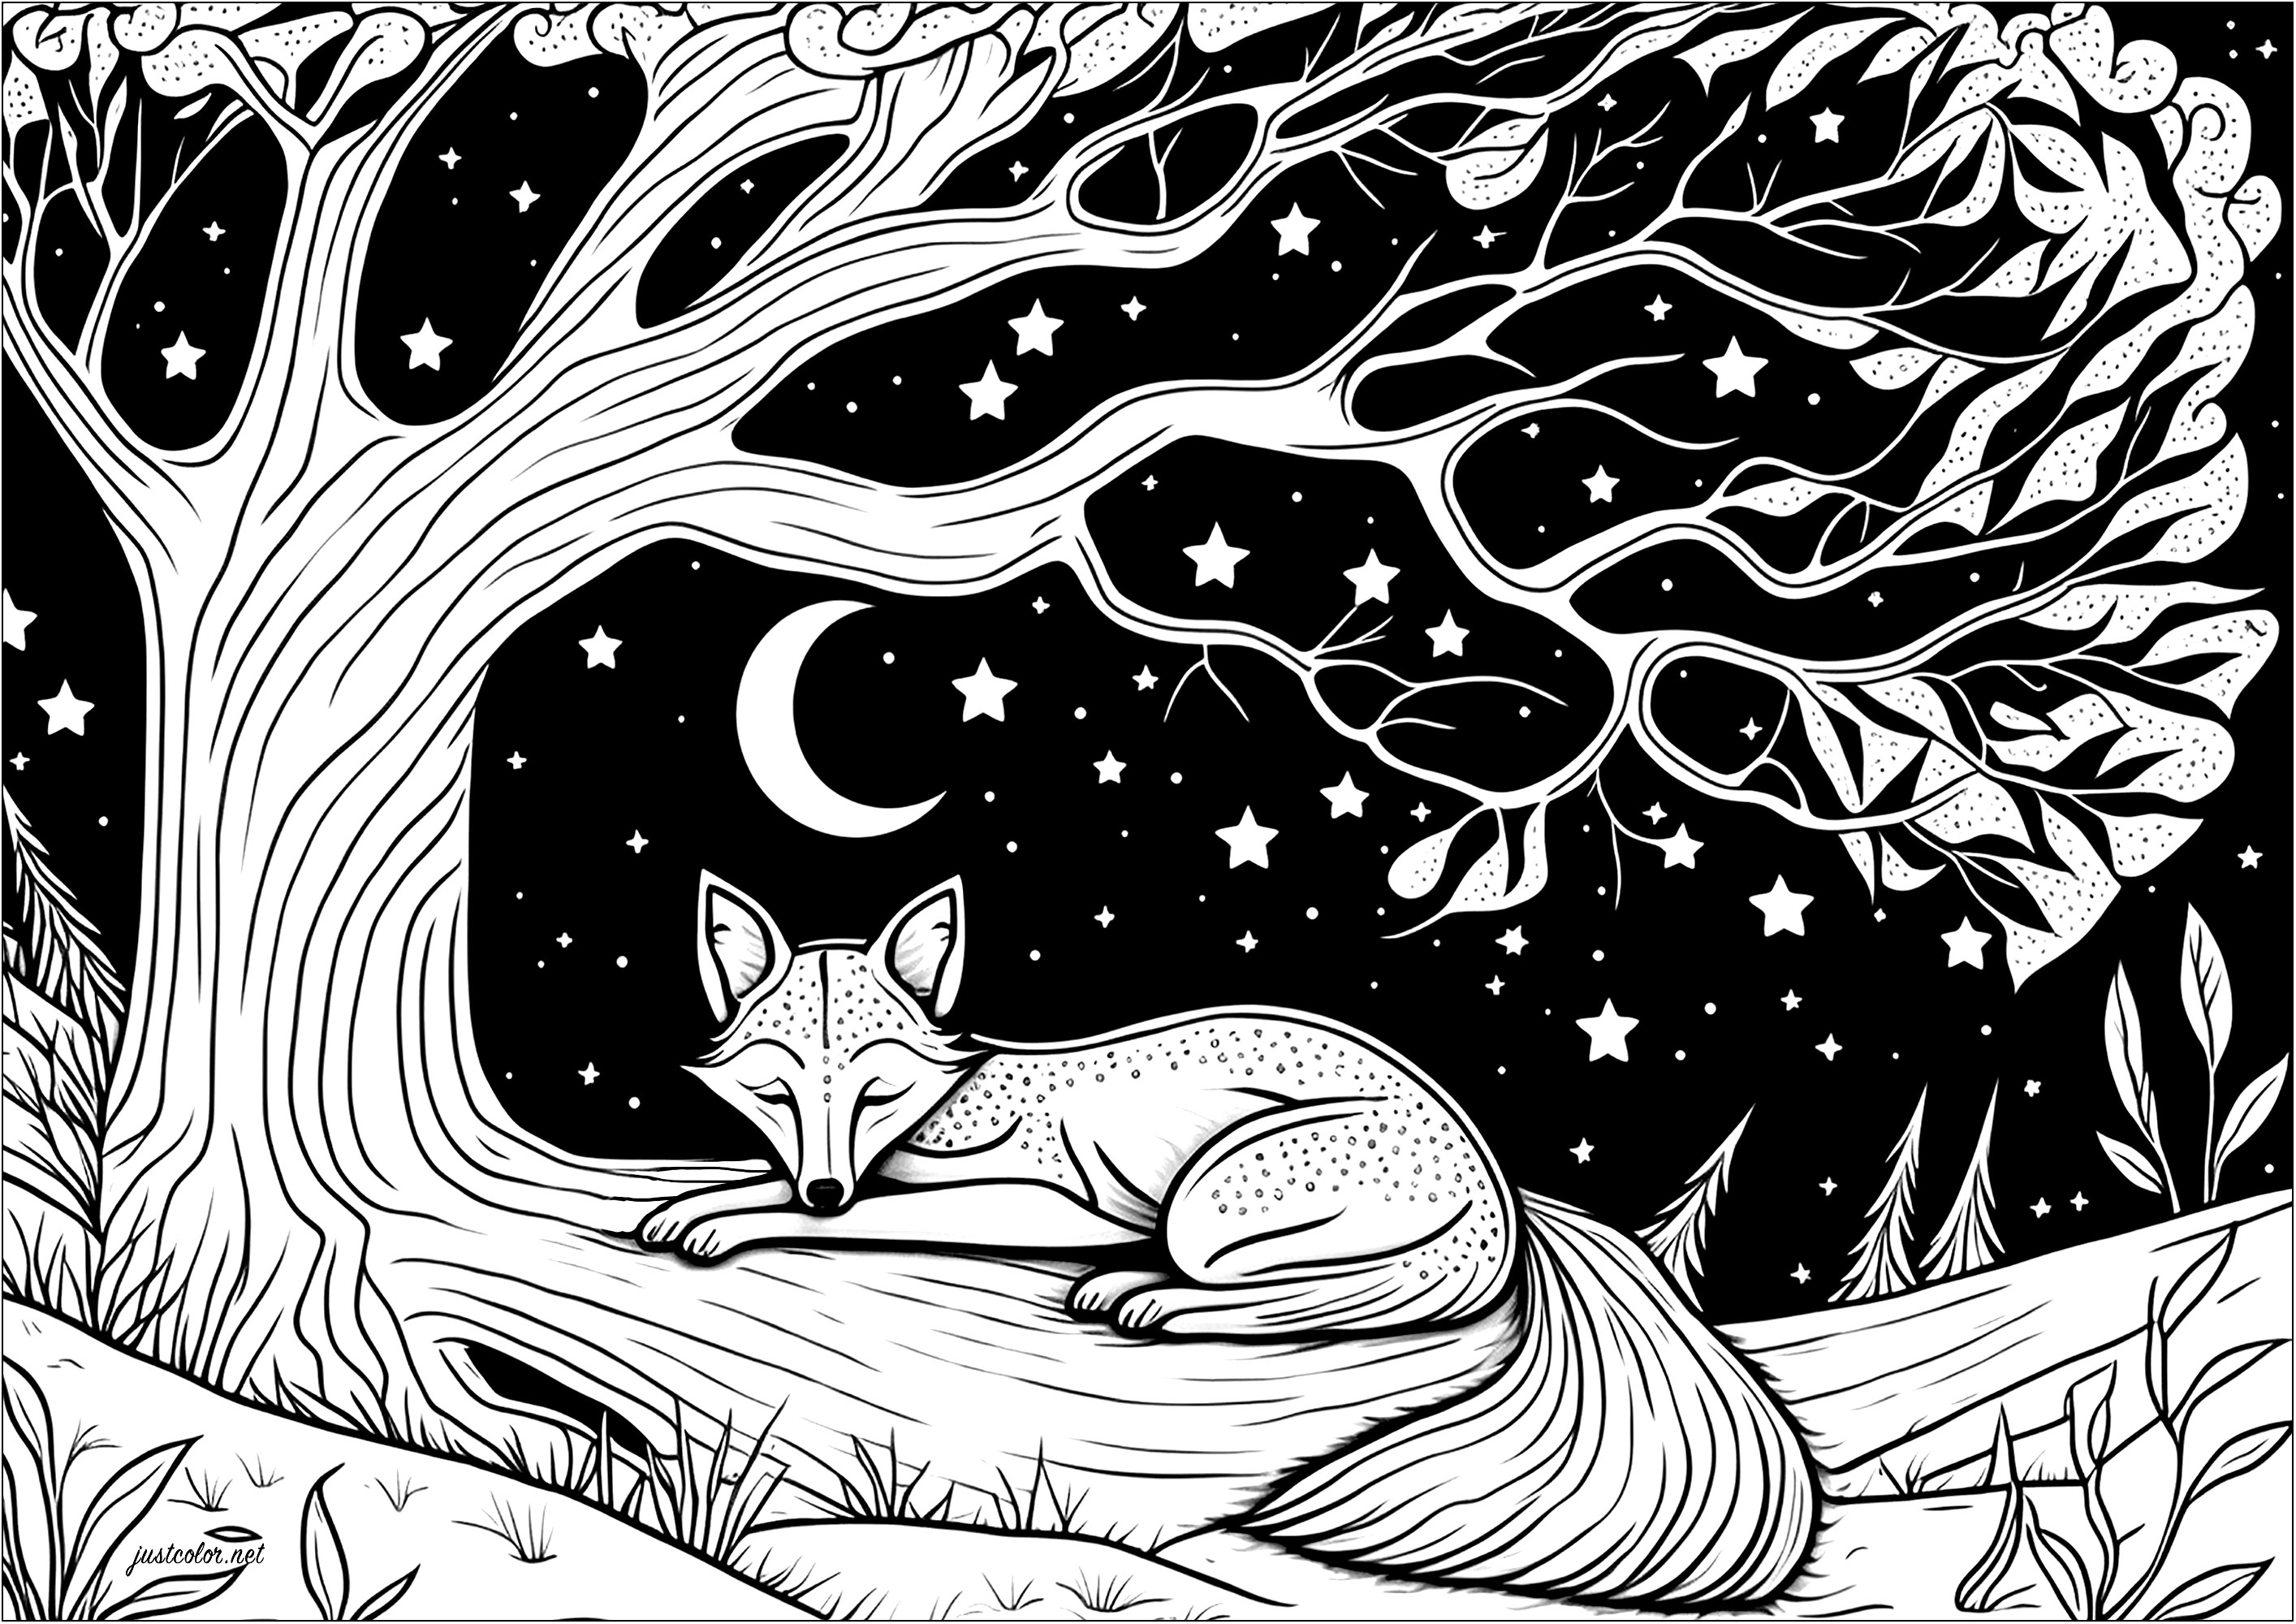 Raposa a dormir num ramo de árvore - Raposas - Coloring Pages for